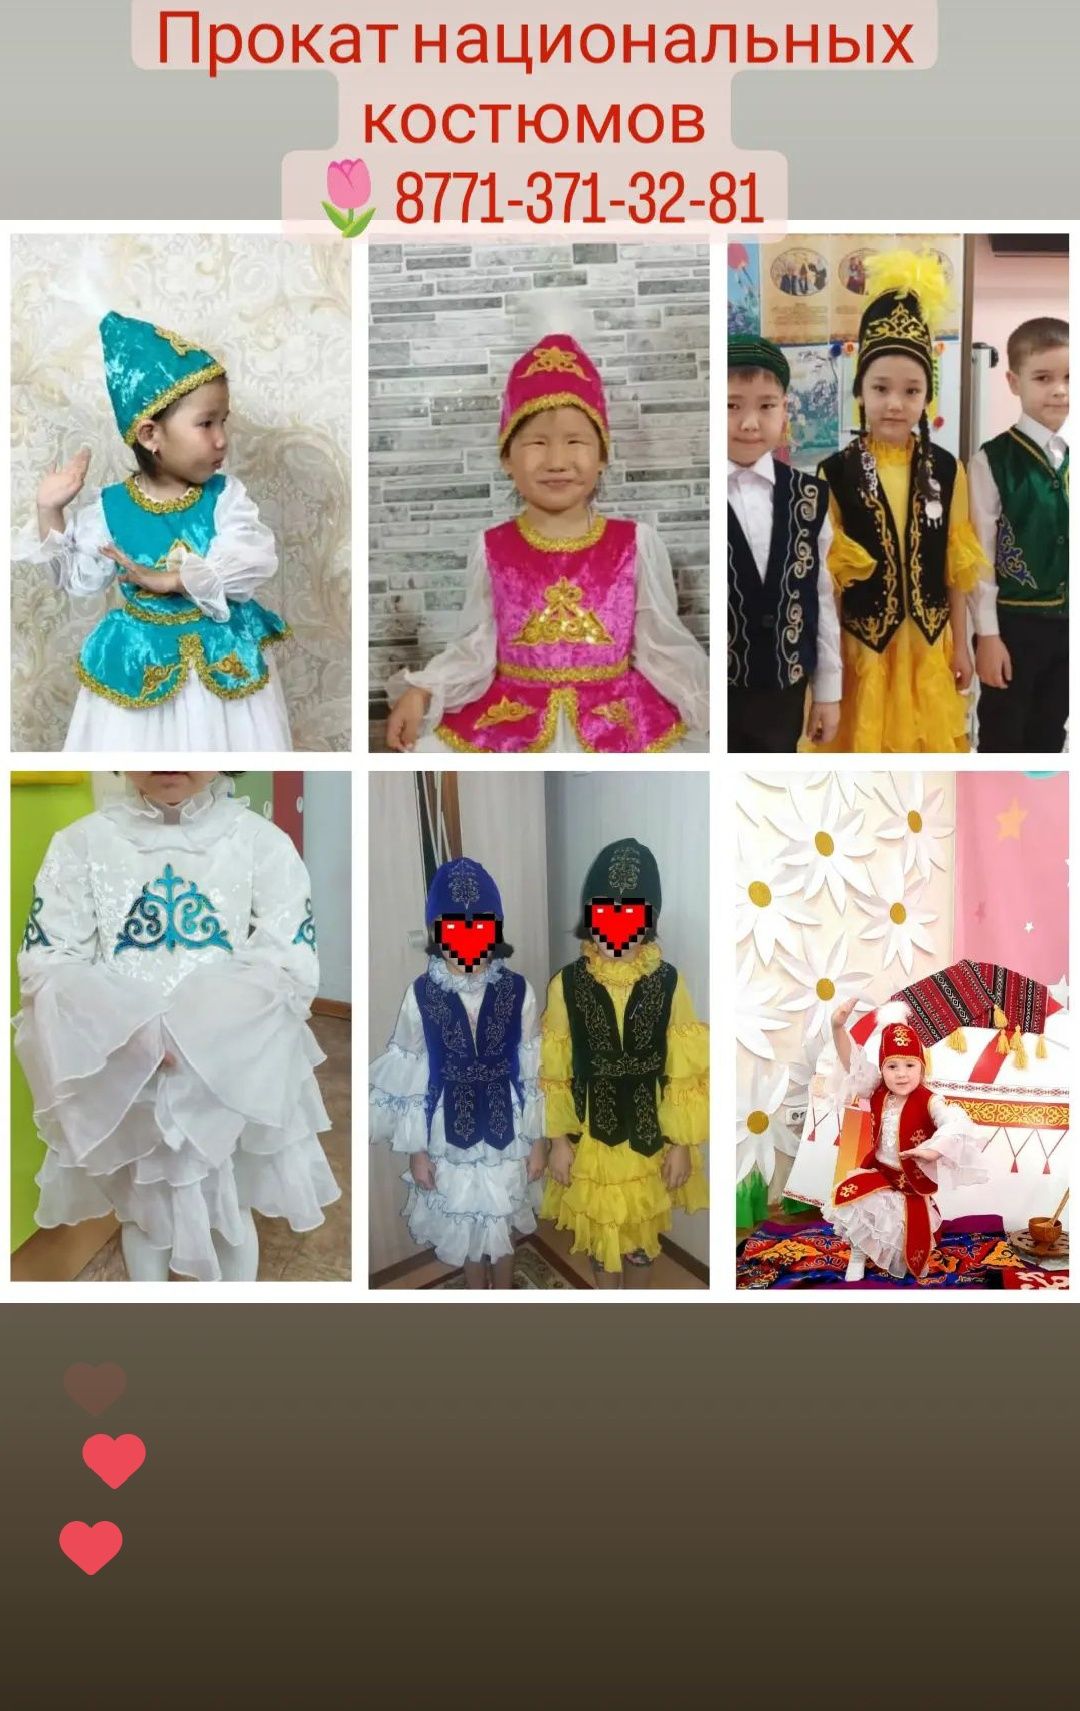 Прокат детских национальных костюмов ов для мальчиков и девочек